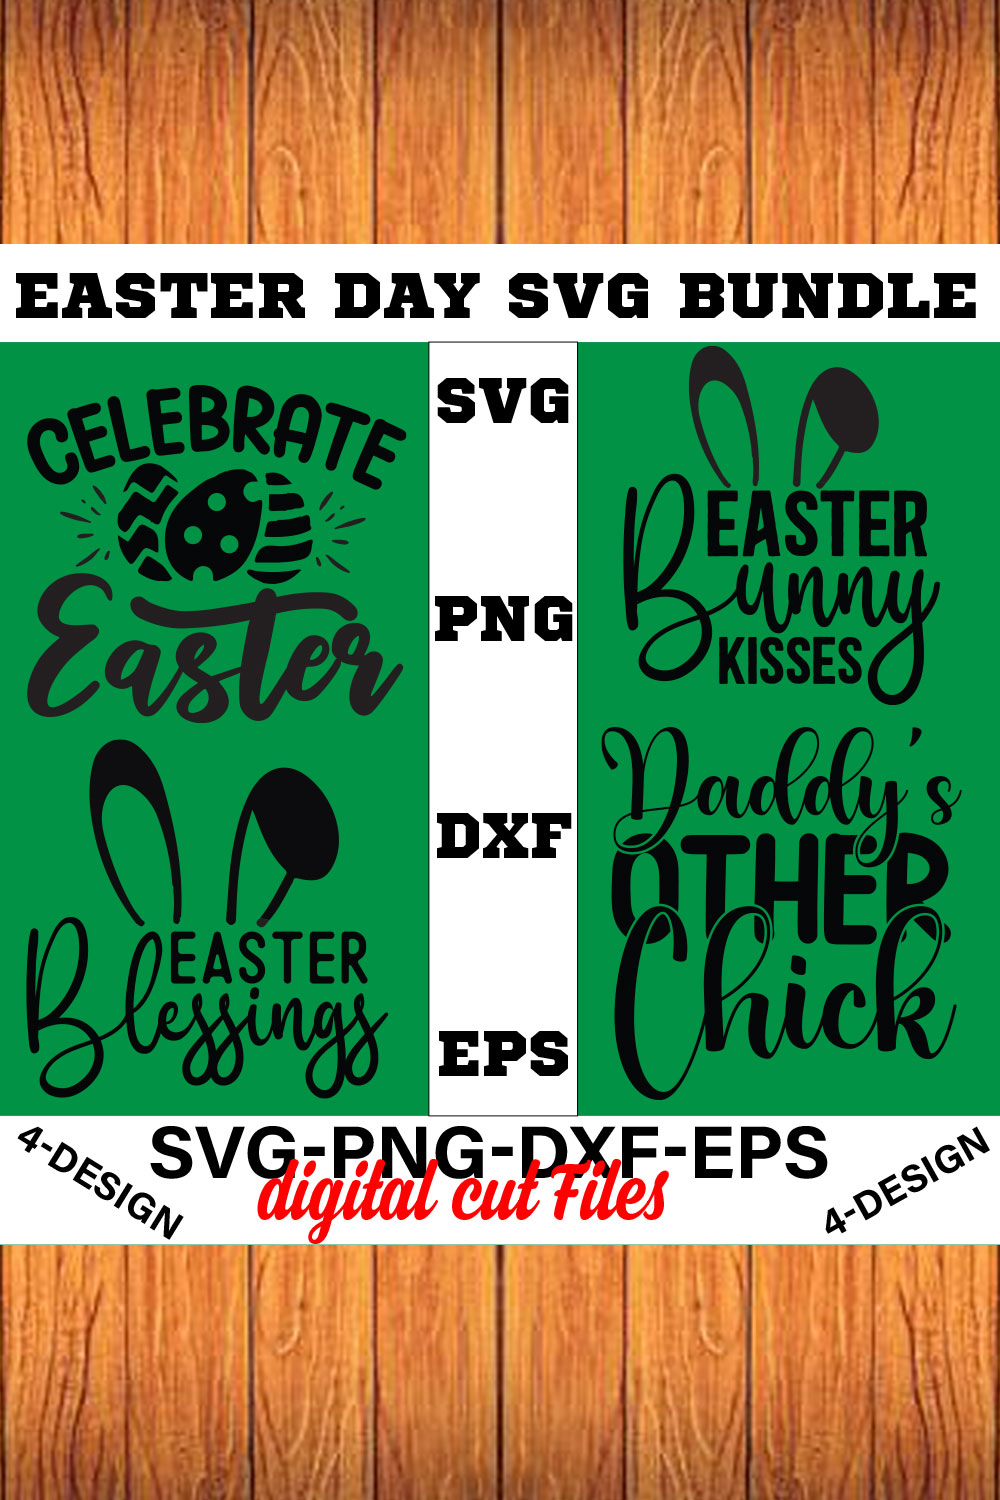 Happy Easter SVG Bundle, Easter SVG, Easter quotes, Easter Bunny svg, Easter Egg svg, Volume-06 pinterest preview image.